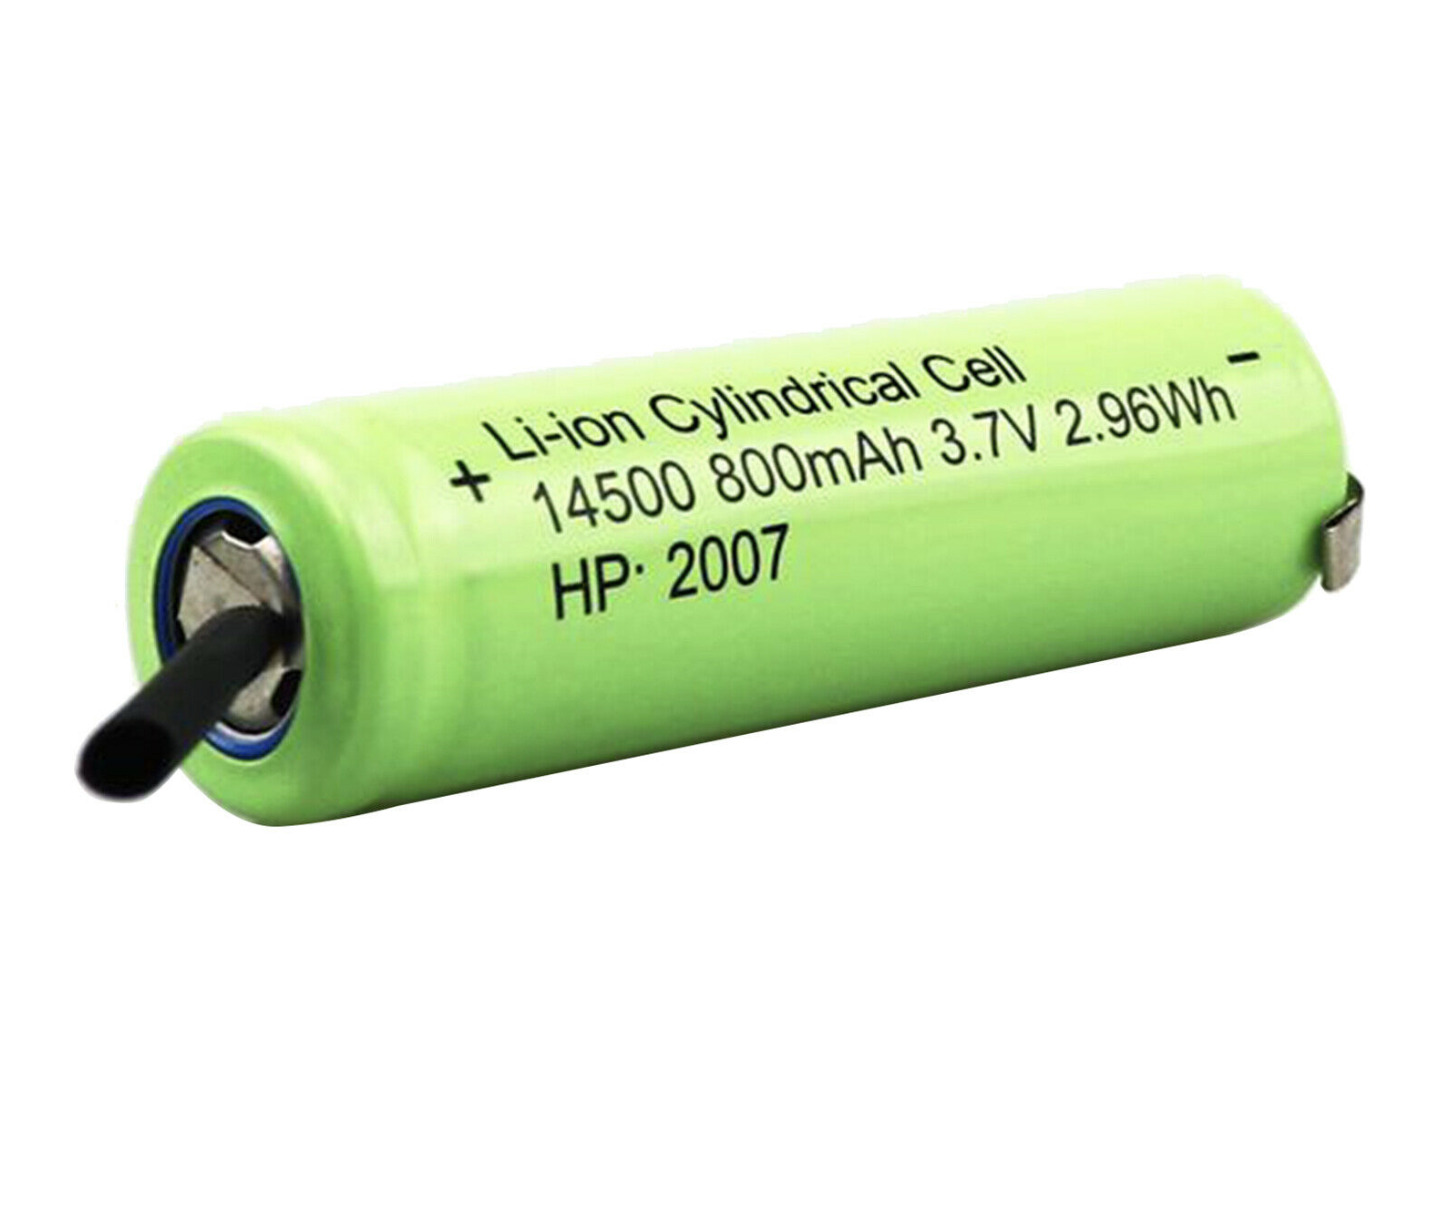 Andis battery for Slimline li cordless +14500 800mah 3.7v 2.96wh-hp 2007